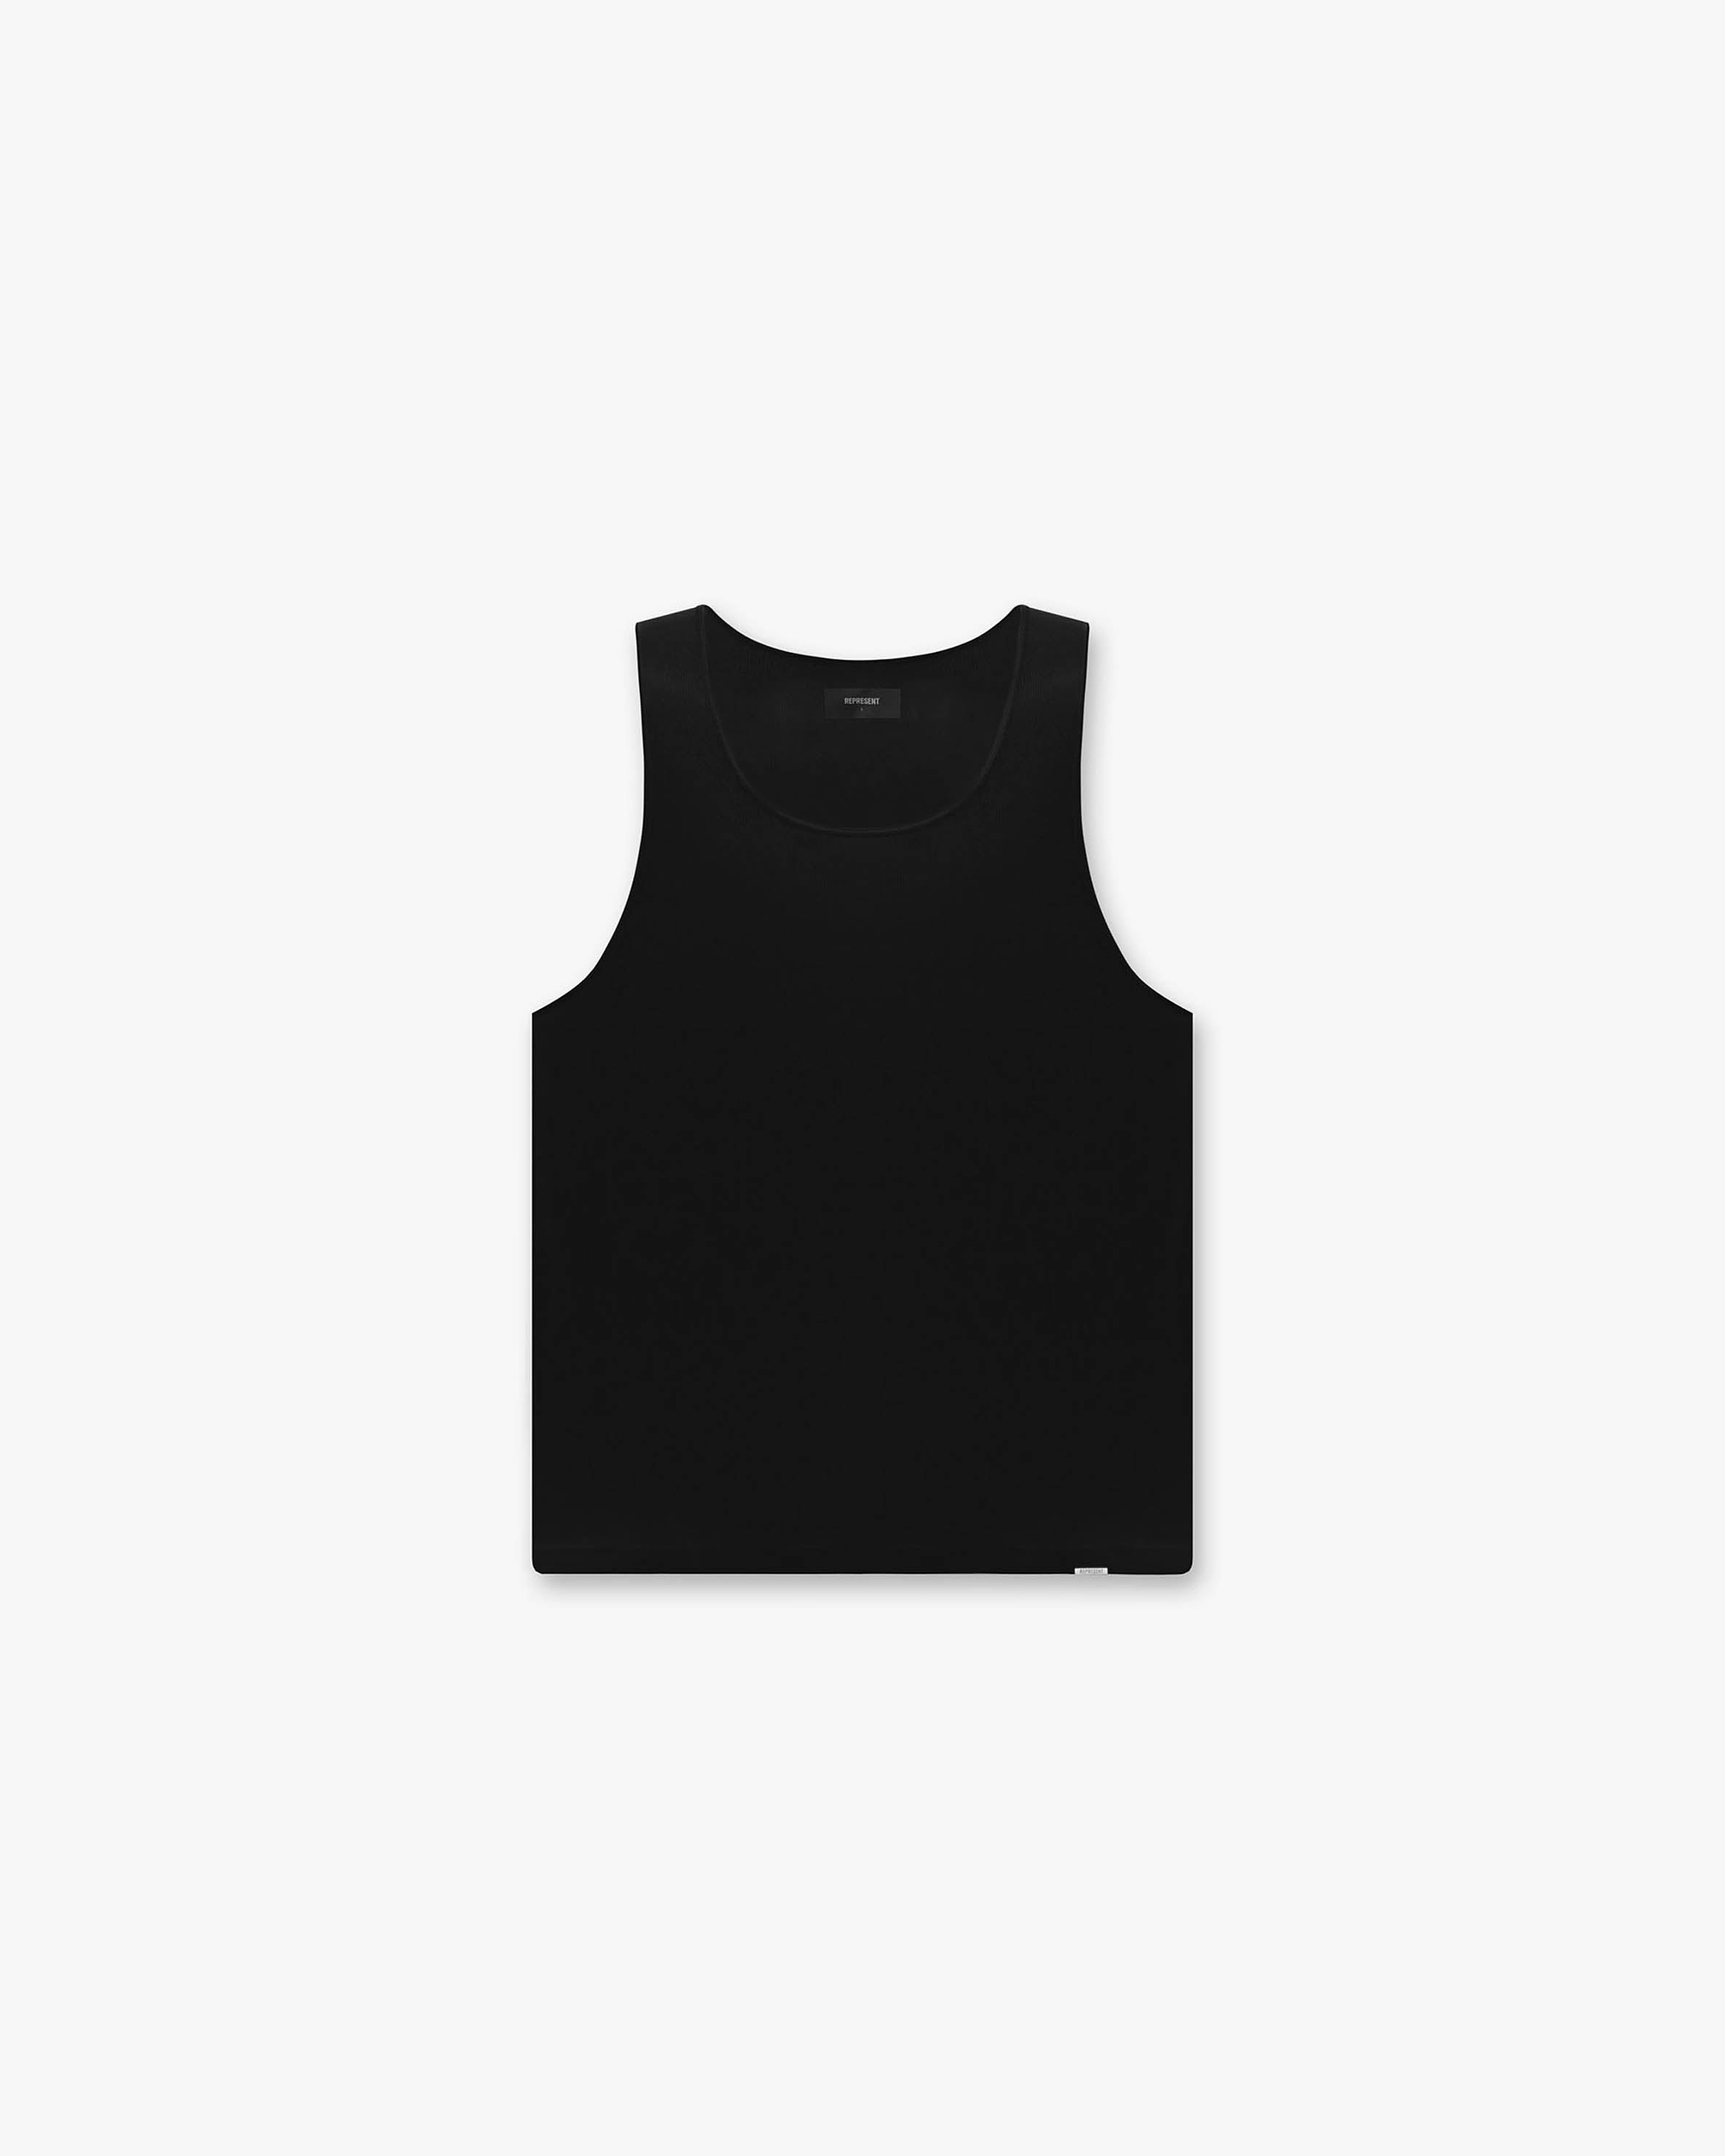 Tank Top | Black T-Shirts SC22 | Represent Clo